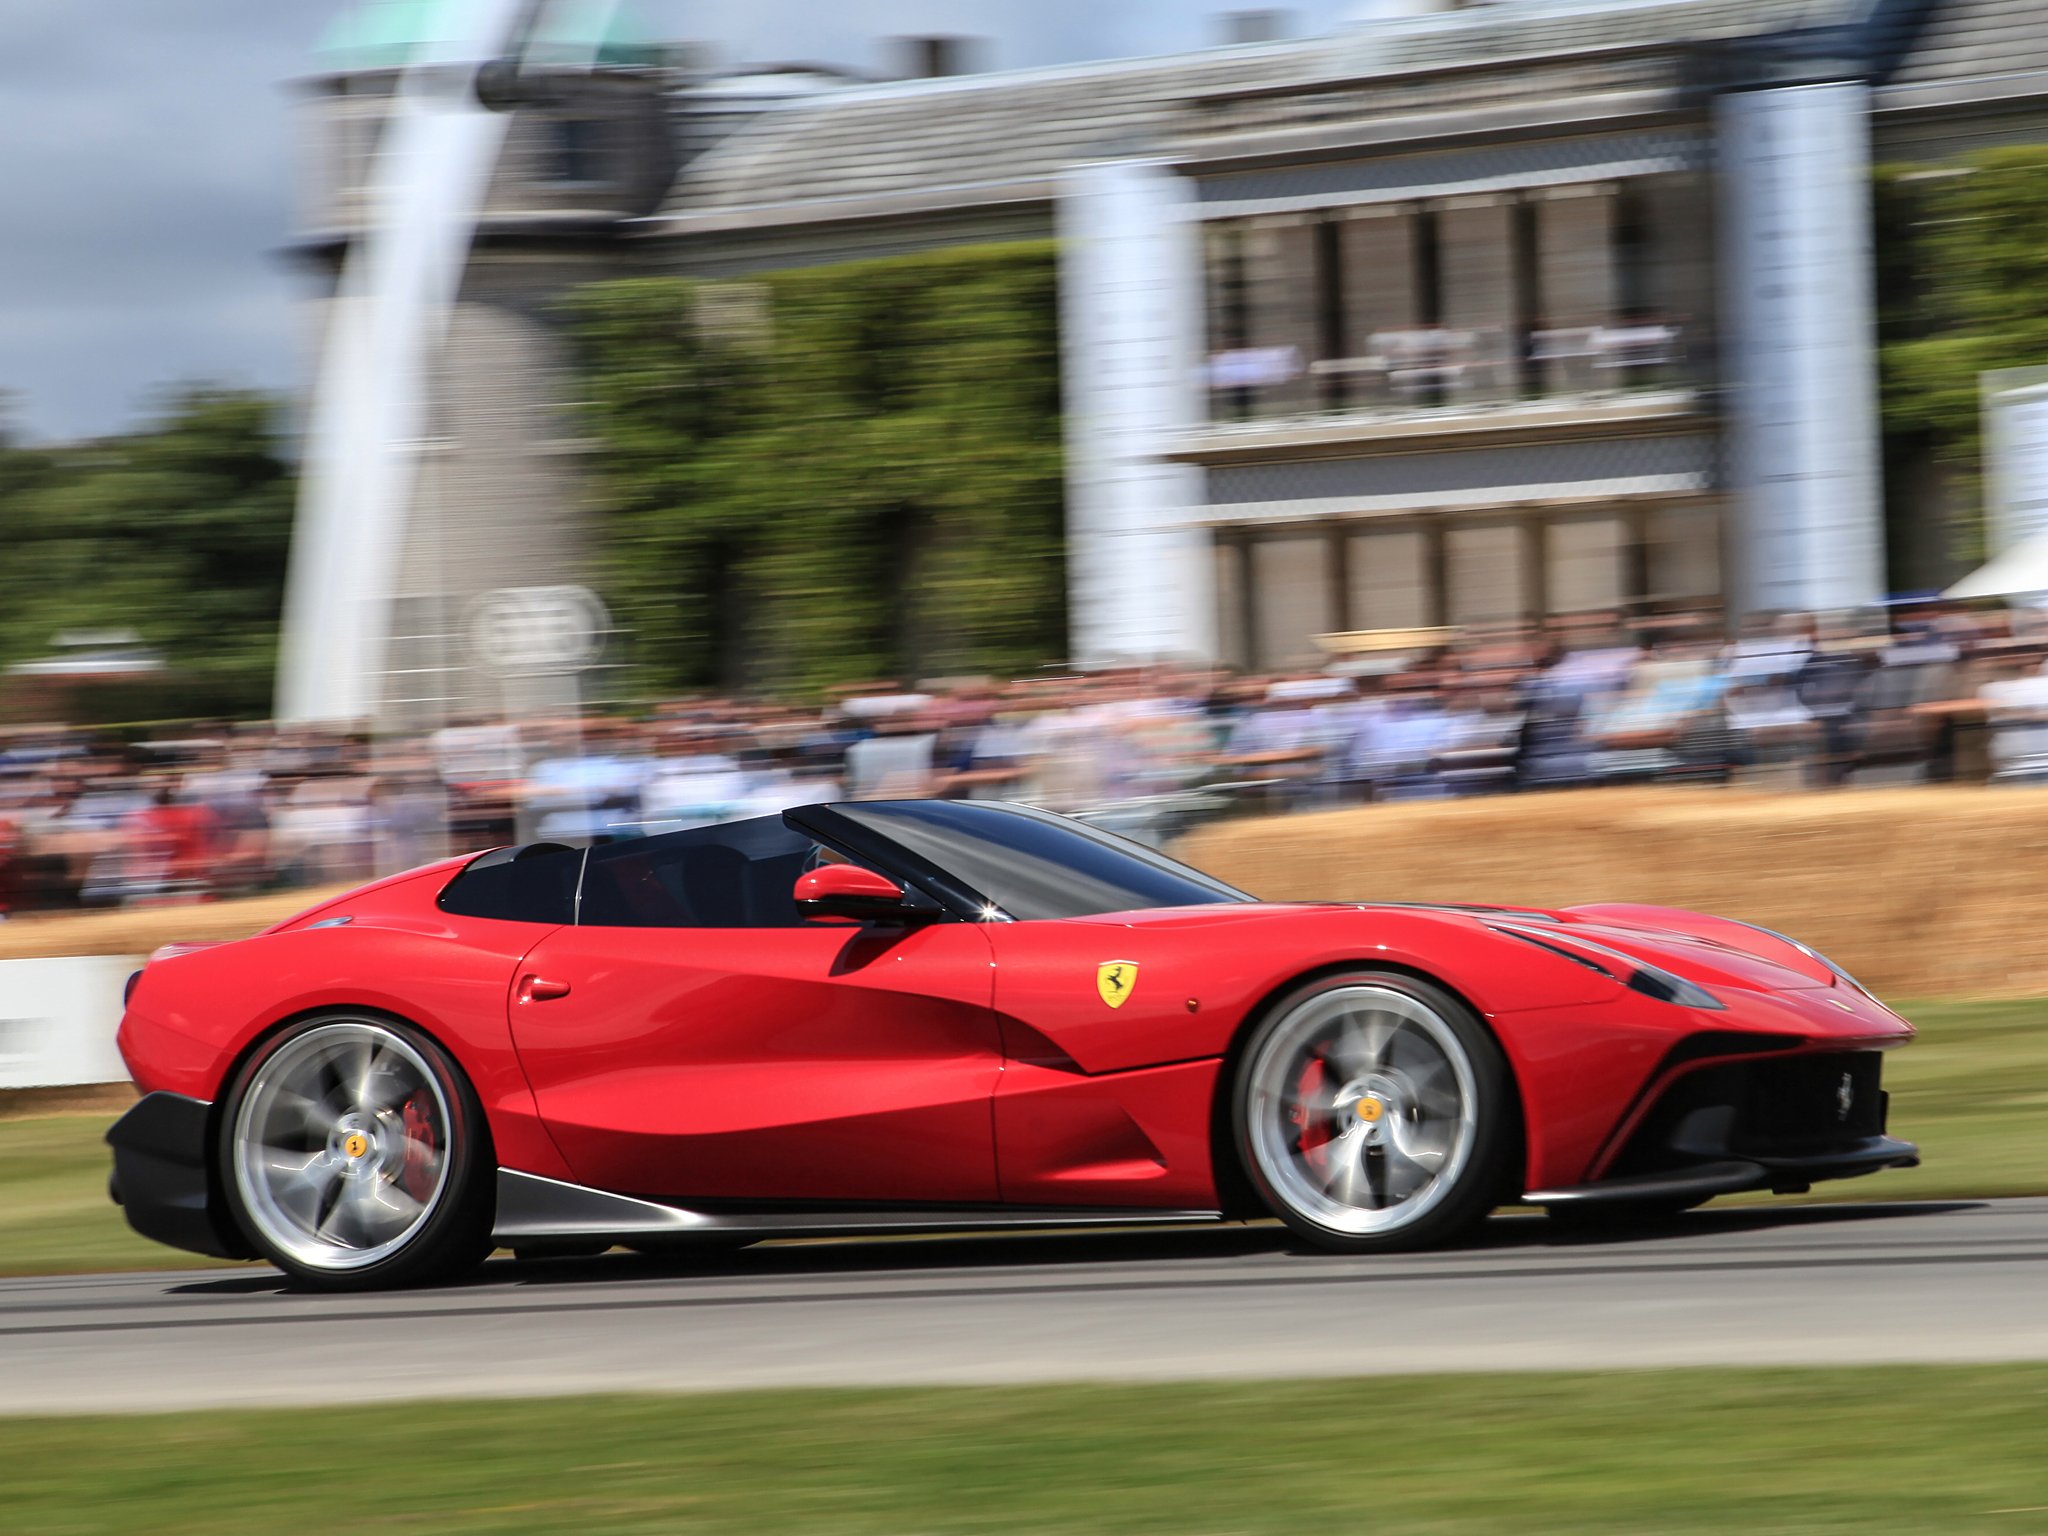 2014, Ferrari, F12, Trs, Supercar Wallpaper